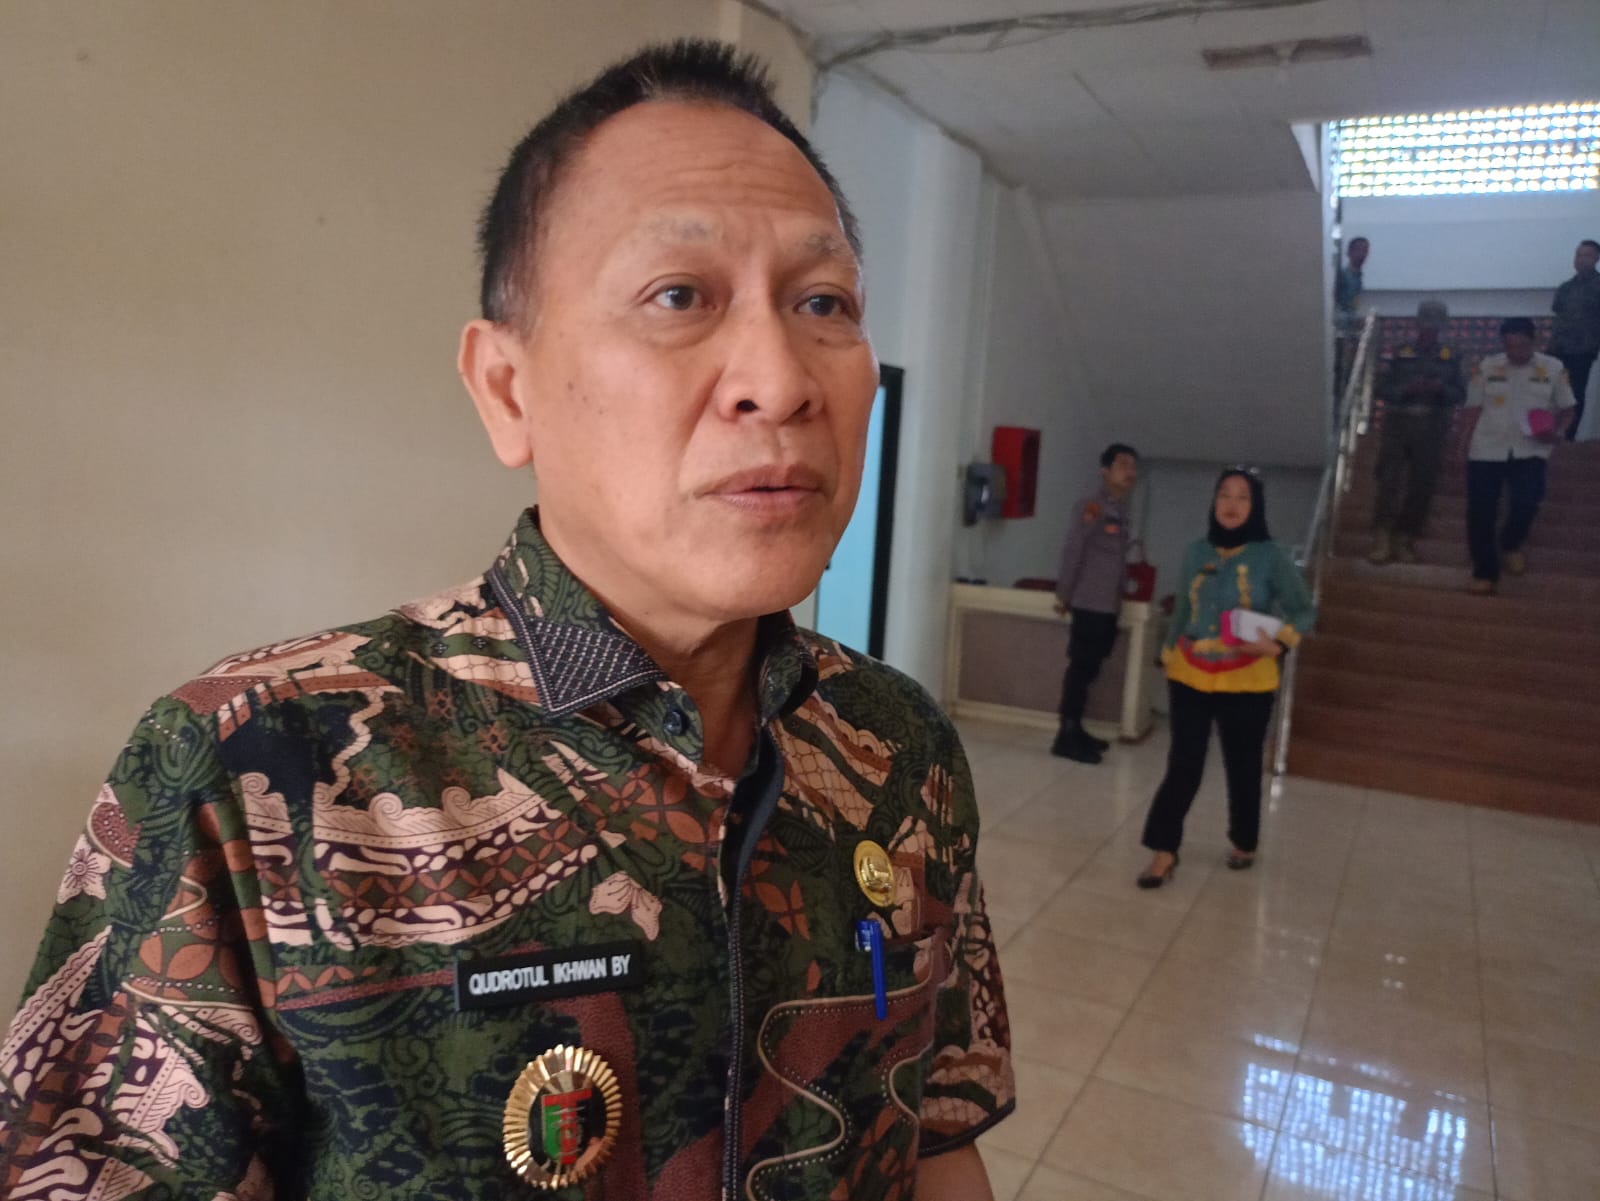 Belum Ada Kepastian Terkait Perpanjangan Jabatan PJ, Pemprov Lampung Siapkan Beberapa Opsi